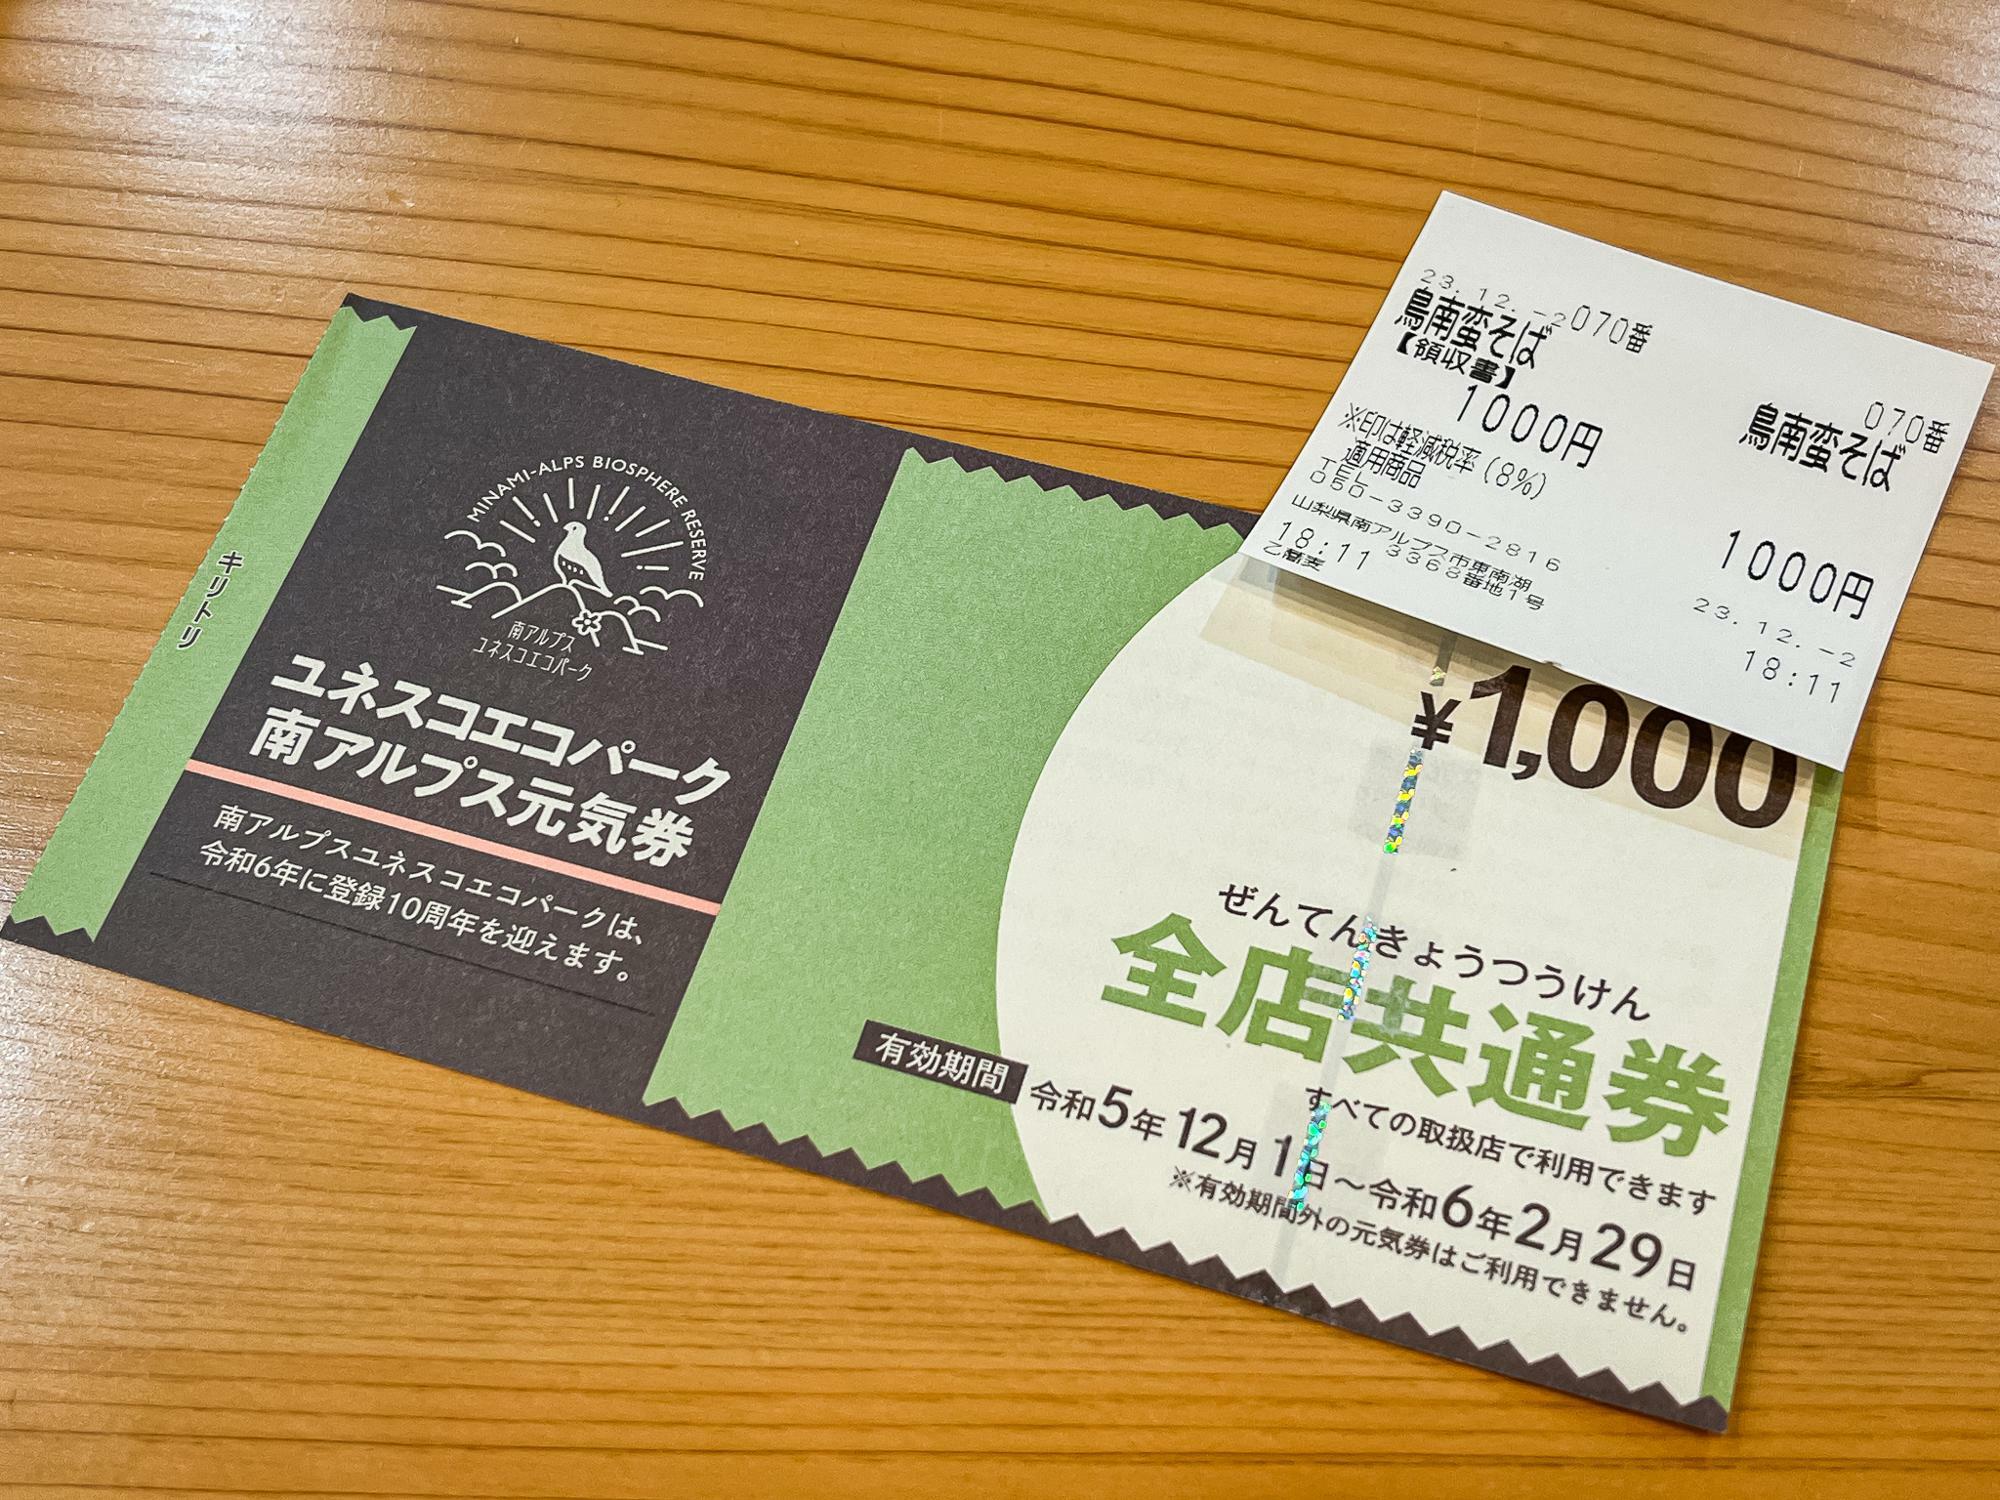 食券を購入後、元気券を添えて渡すと現金1000円が返金されます。